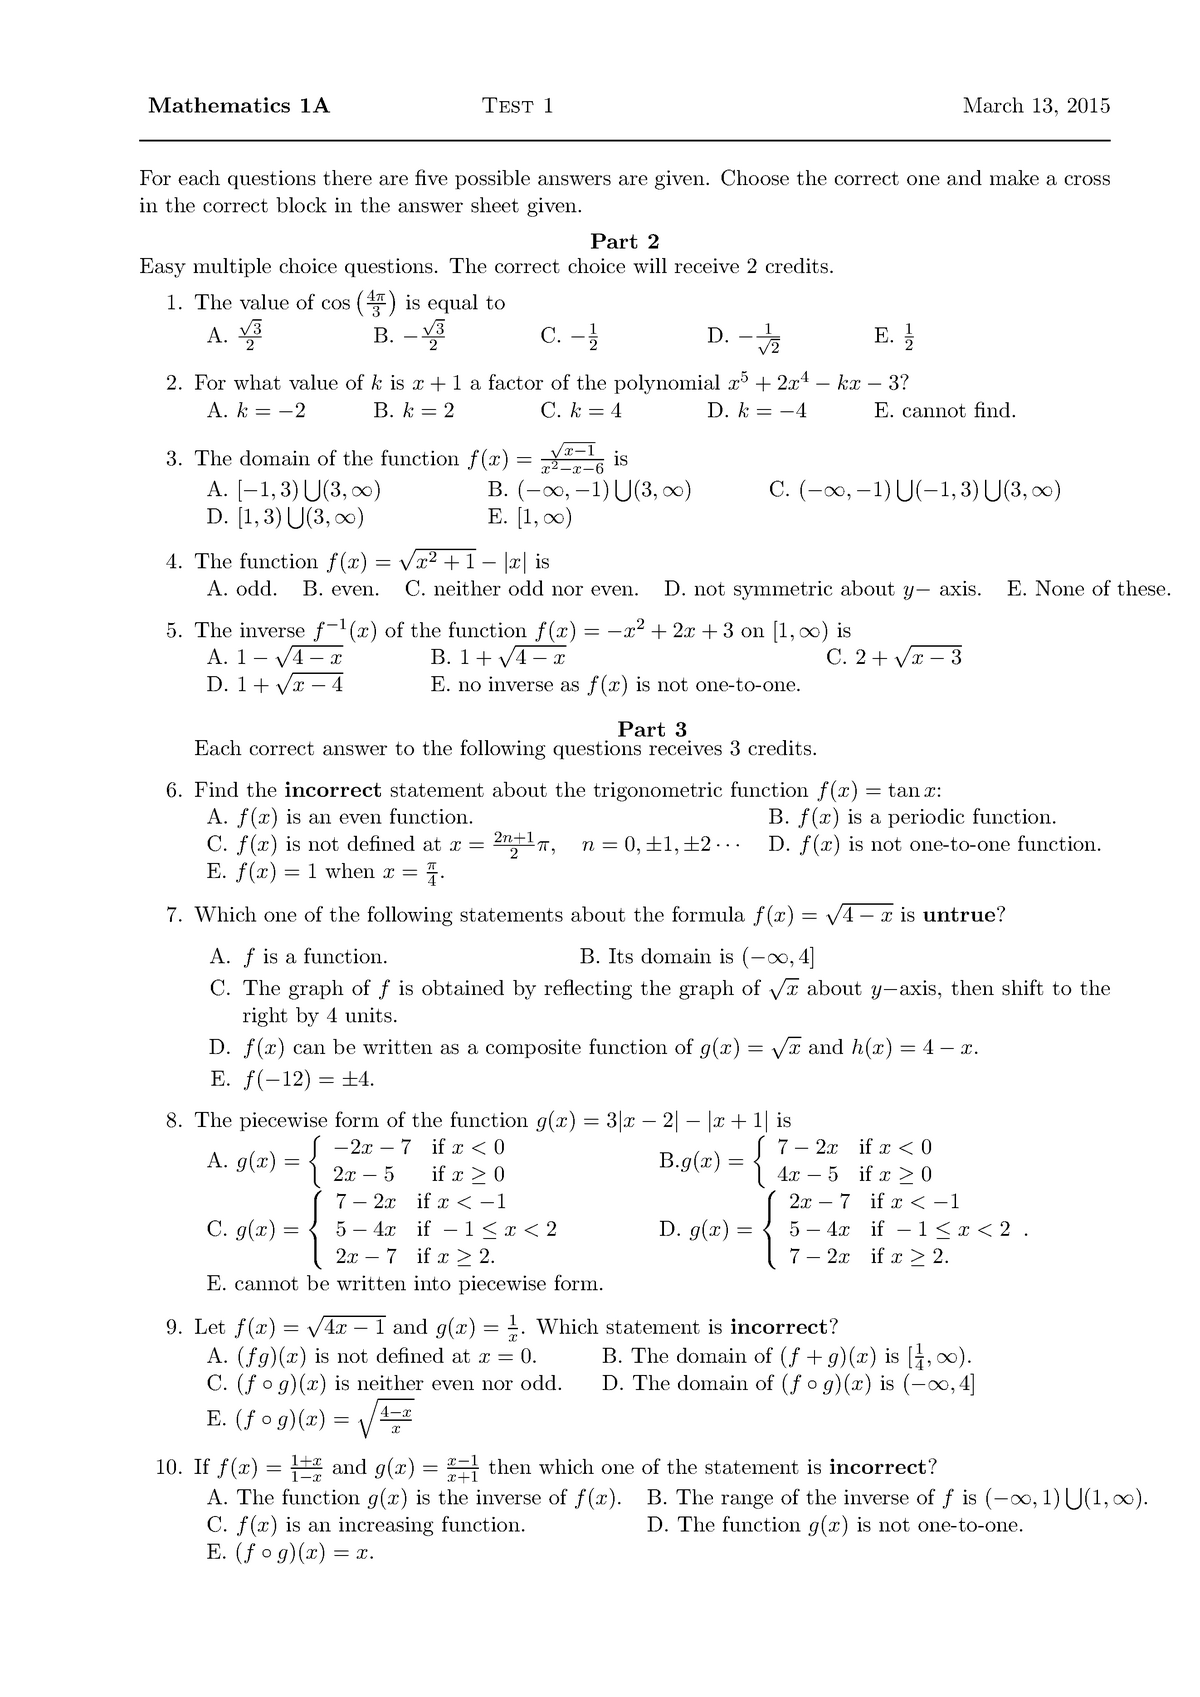 Math131 Test 1 2015 - PAST PAPER - Mathematics 1A Test 1 March 13, 2015 ...